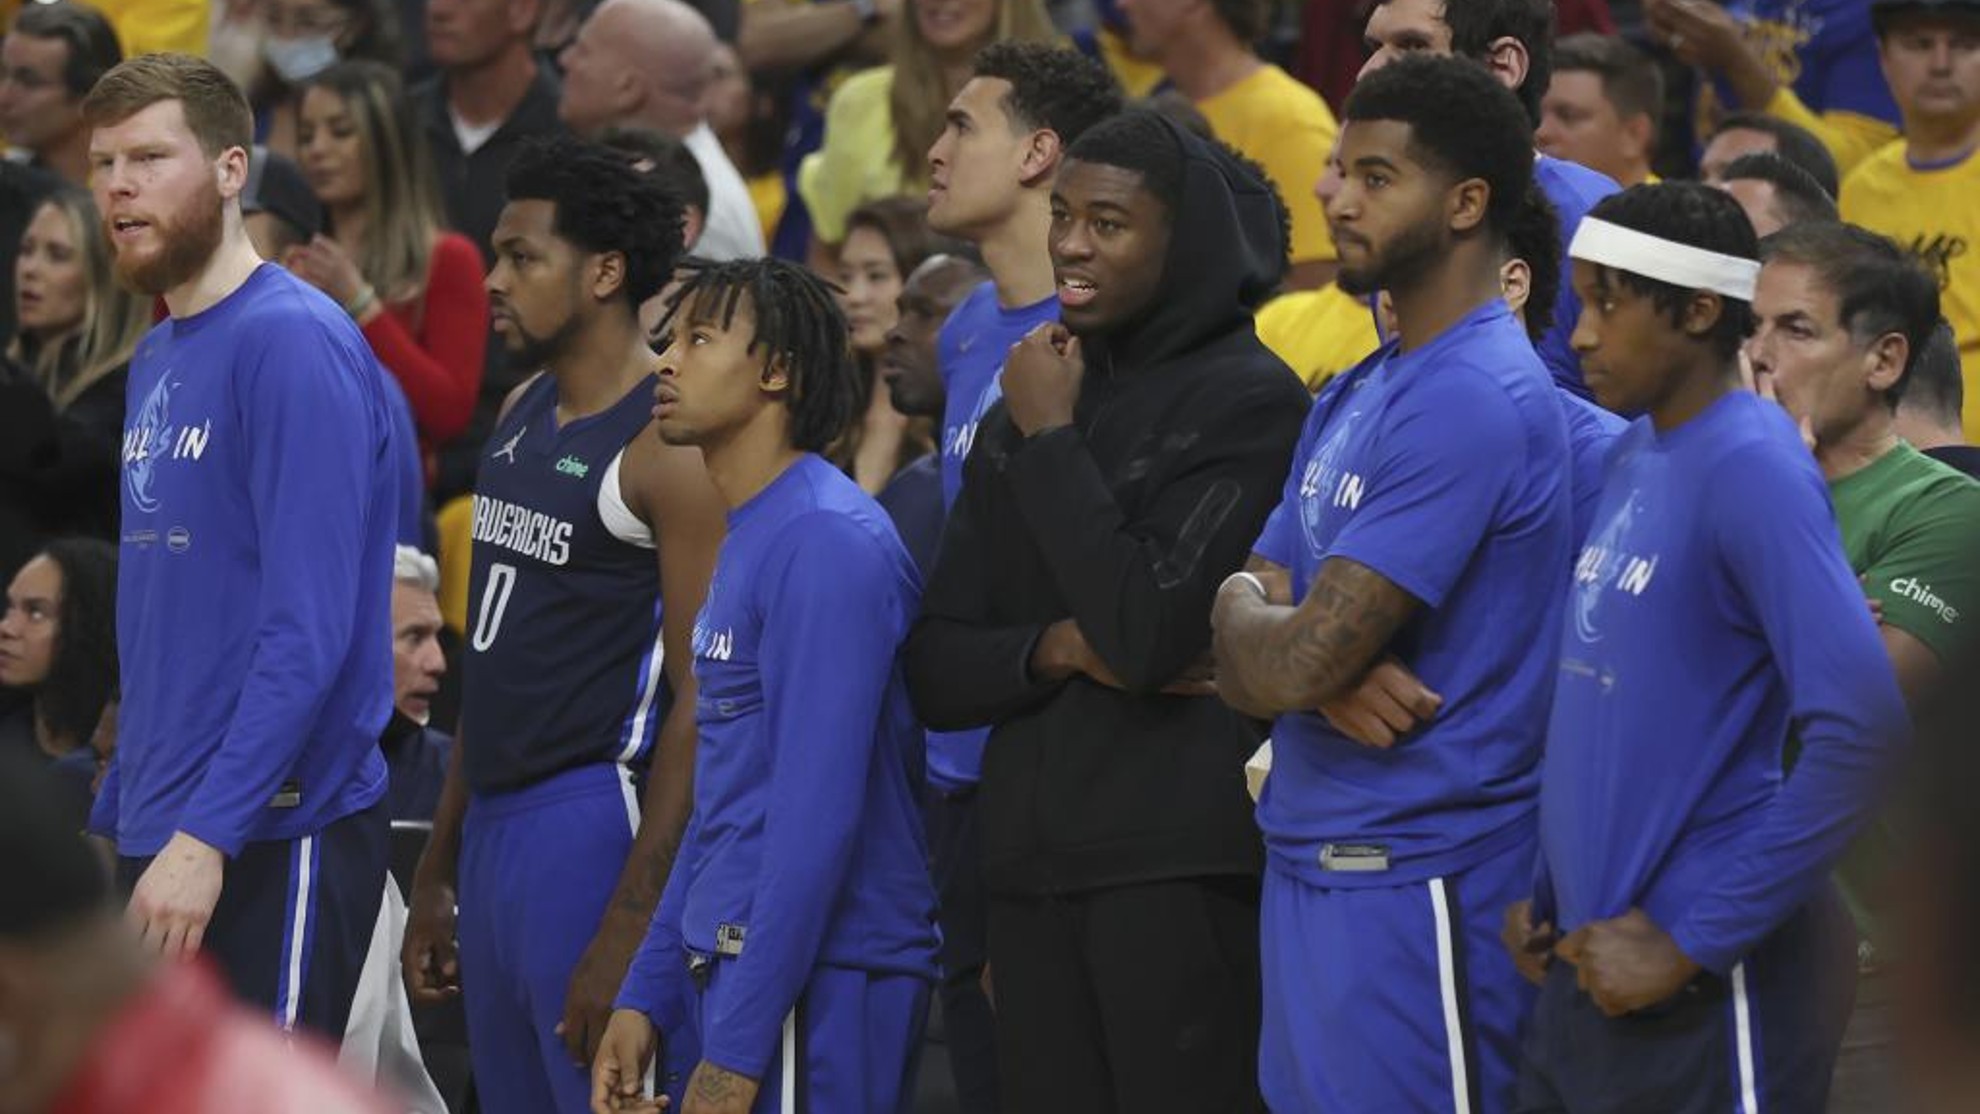 Jugadores de banquillo de los Mavericks, de pie durante el segundo partido ante los Warriors.